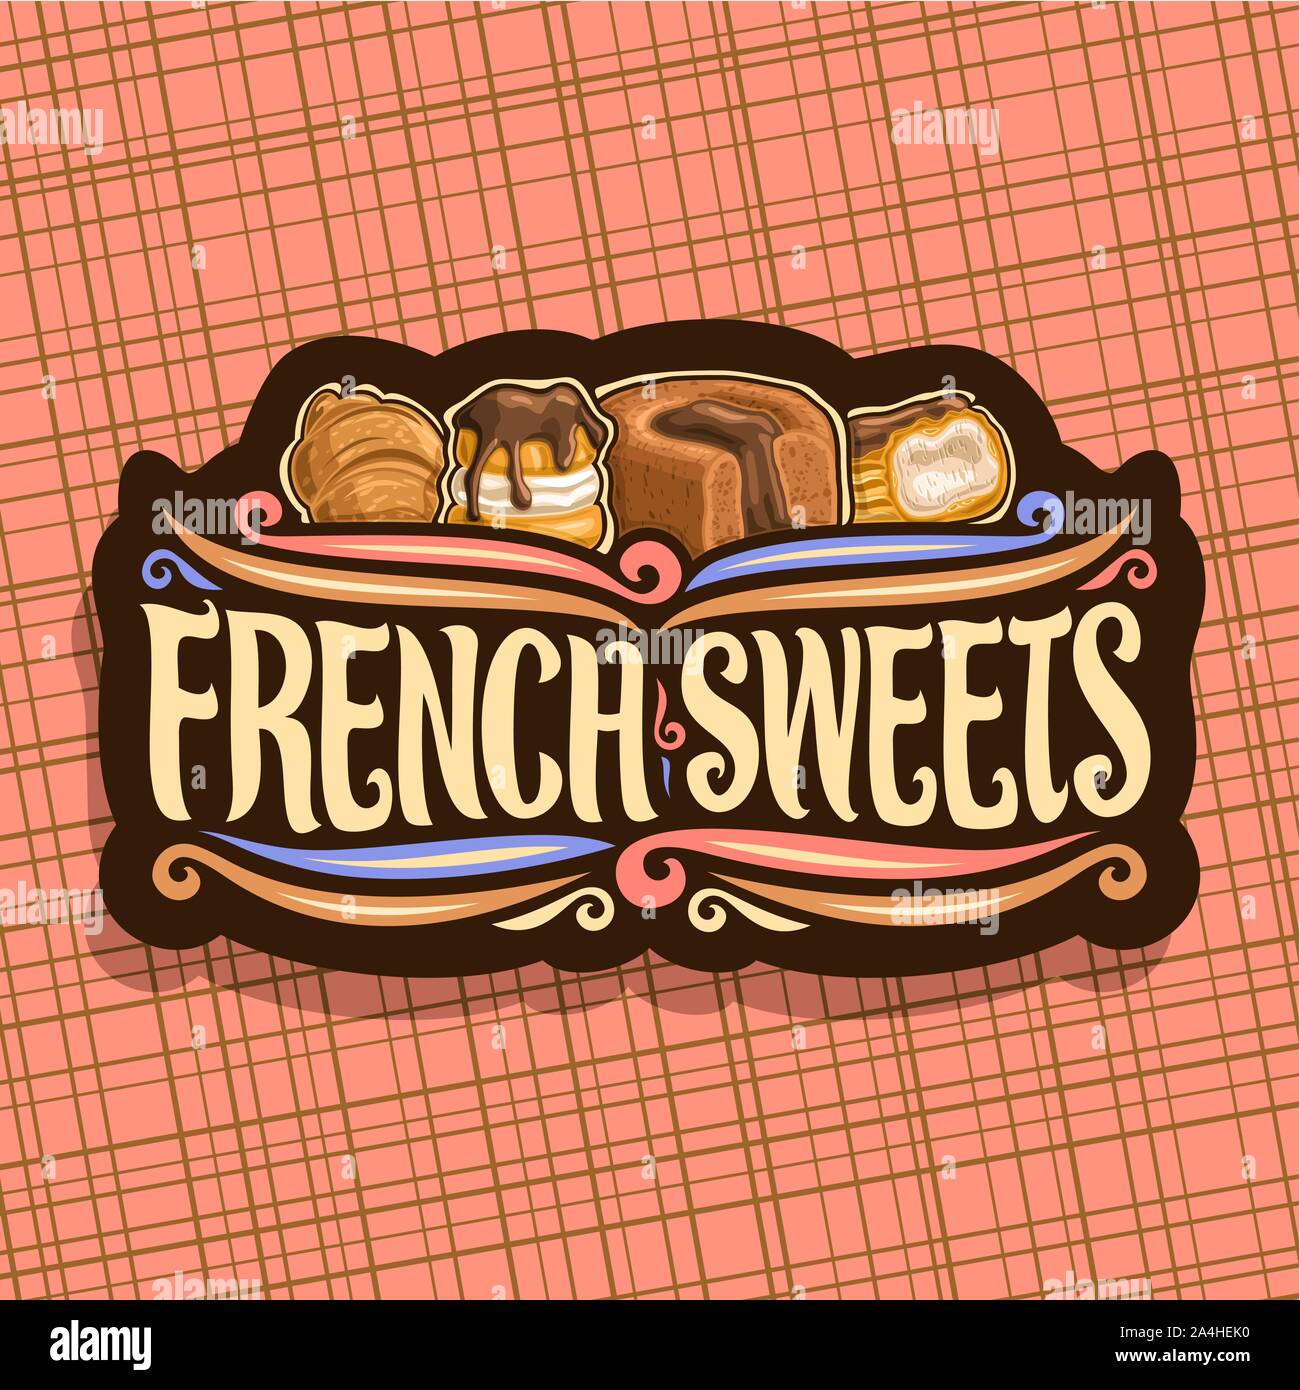 Vektor logo für französische Spezialitäten, dunkle Tafel für Konditorei Cafe mit original brush Schrift für Worte französische Spezialitäten, frische Croissants, mit Schokolade Stock Vektor